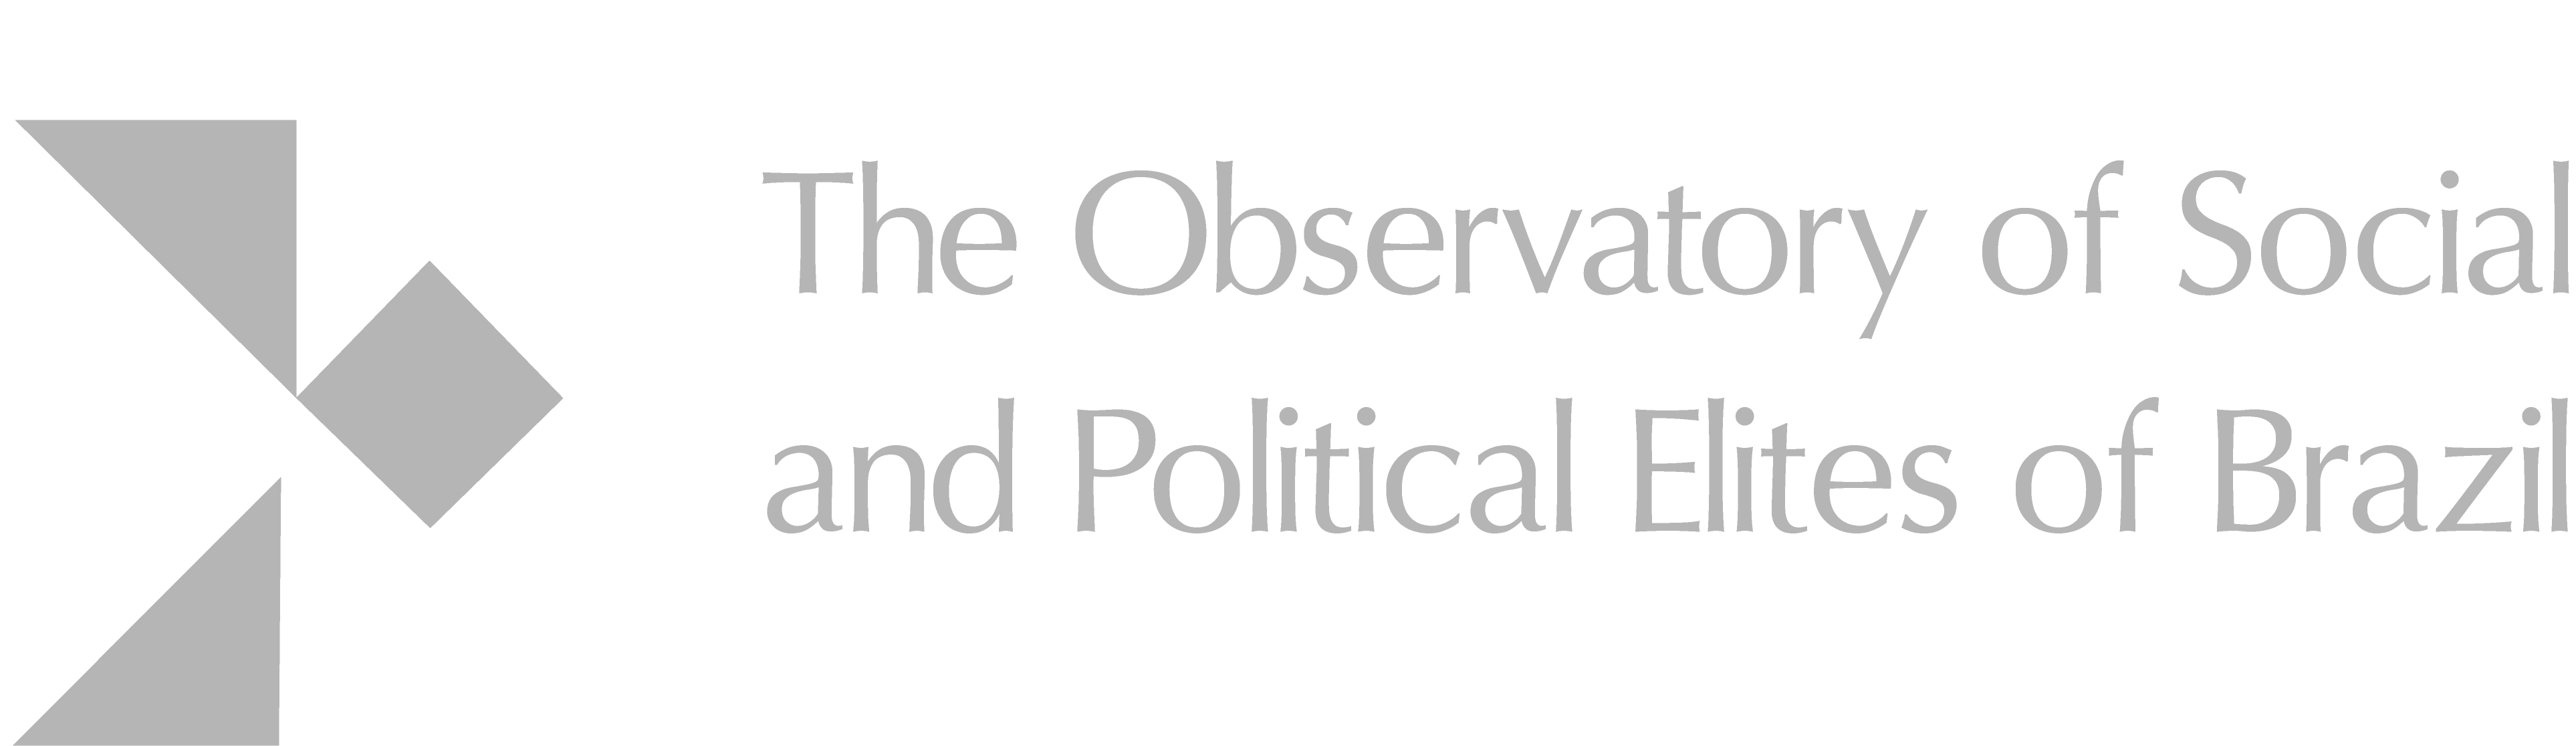 I Colóquio do Observatório de Elites: políticos profissionais em análise